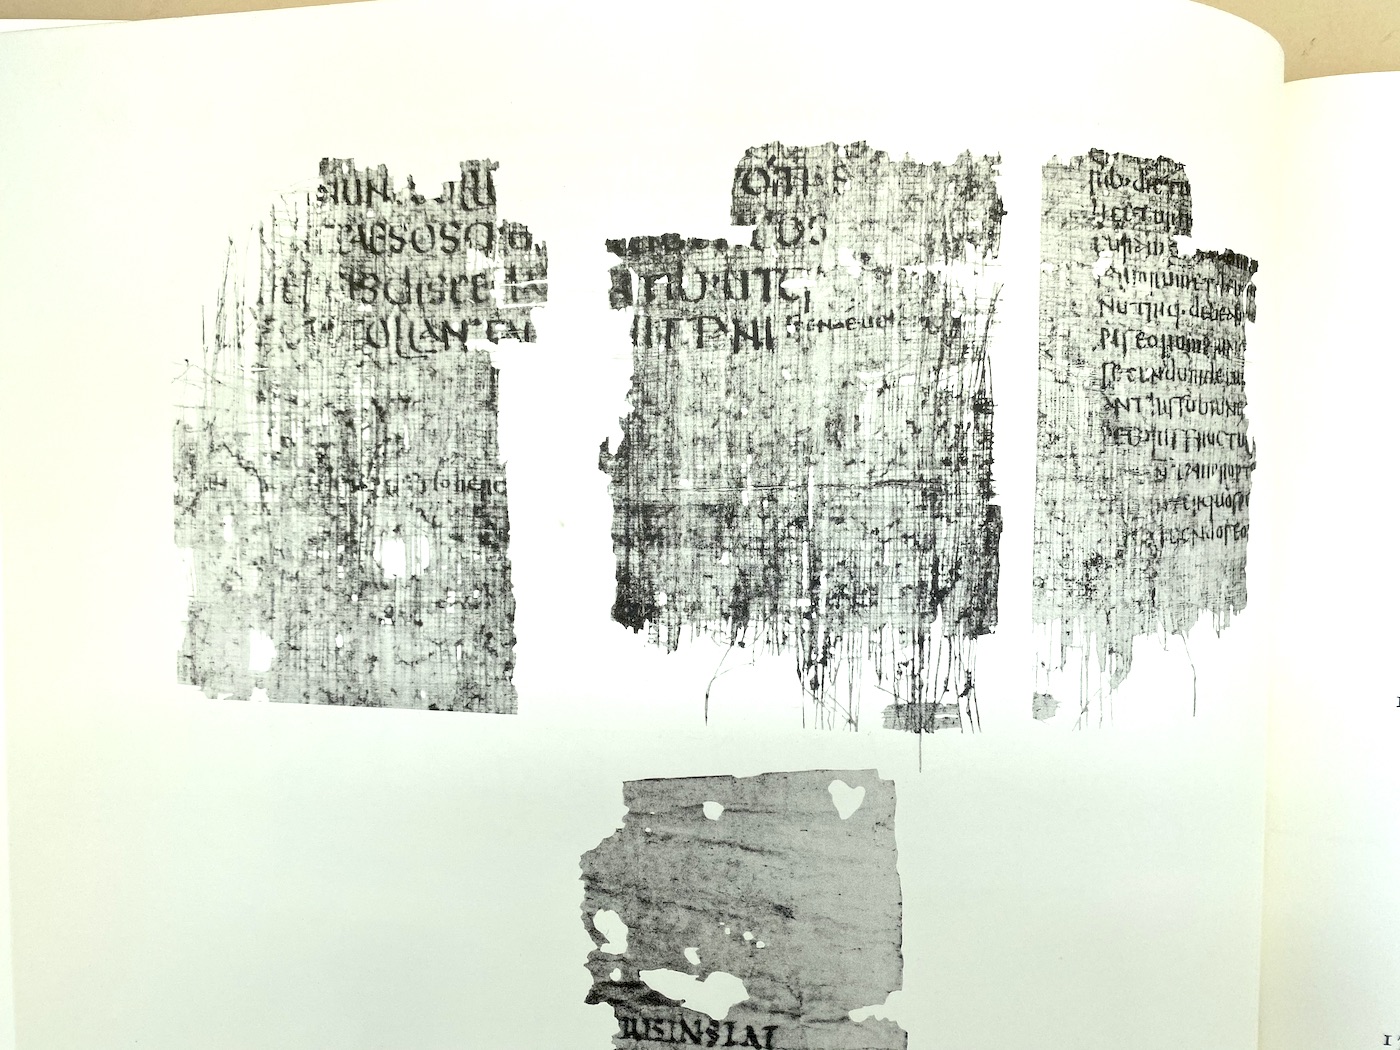 Ashmolean Museum papyrus fragement of Vergil